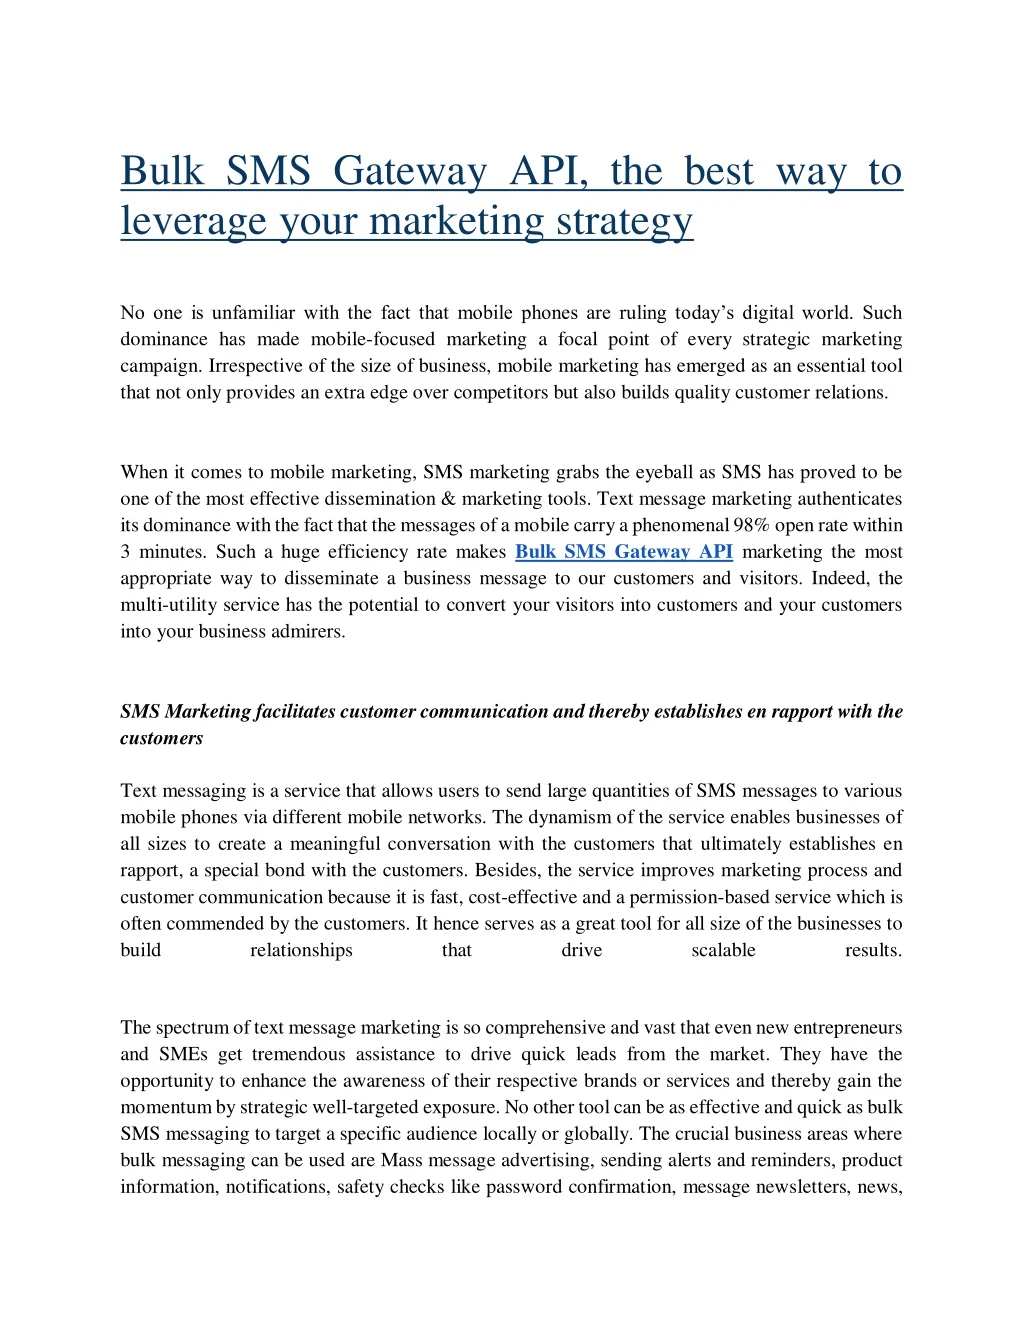 bulk sms gateway api the best way to leverage